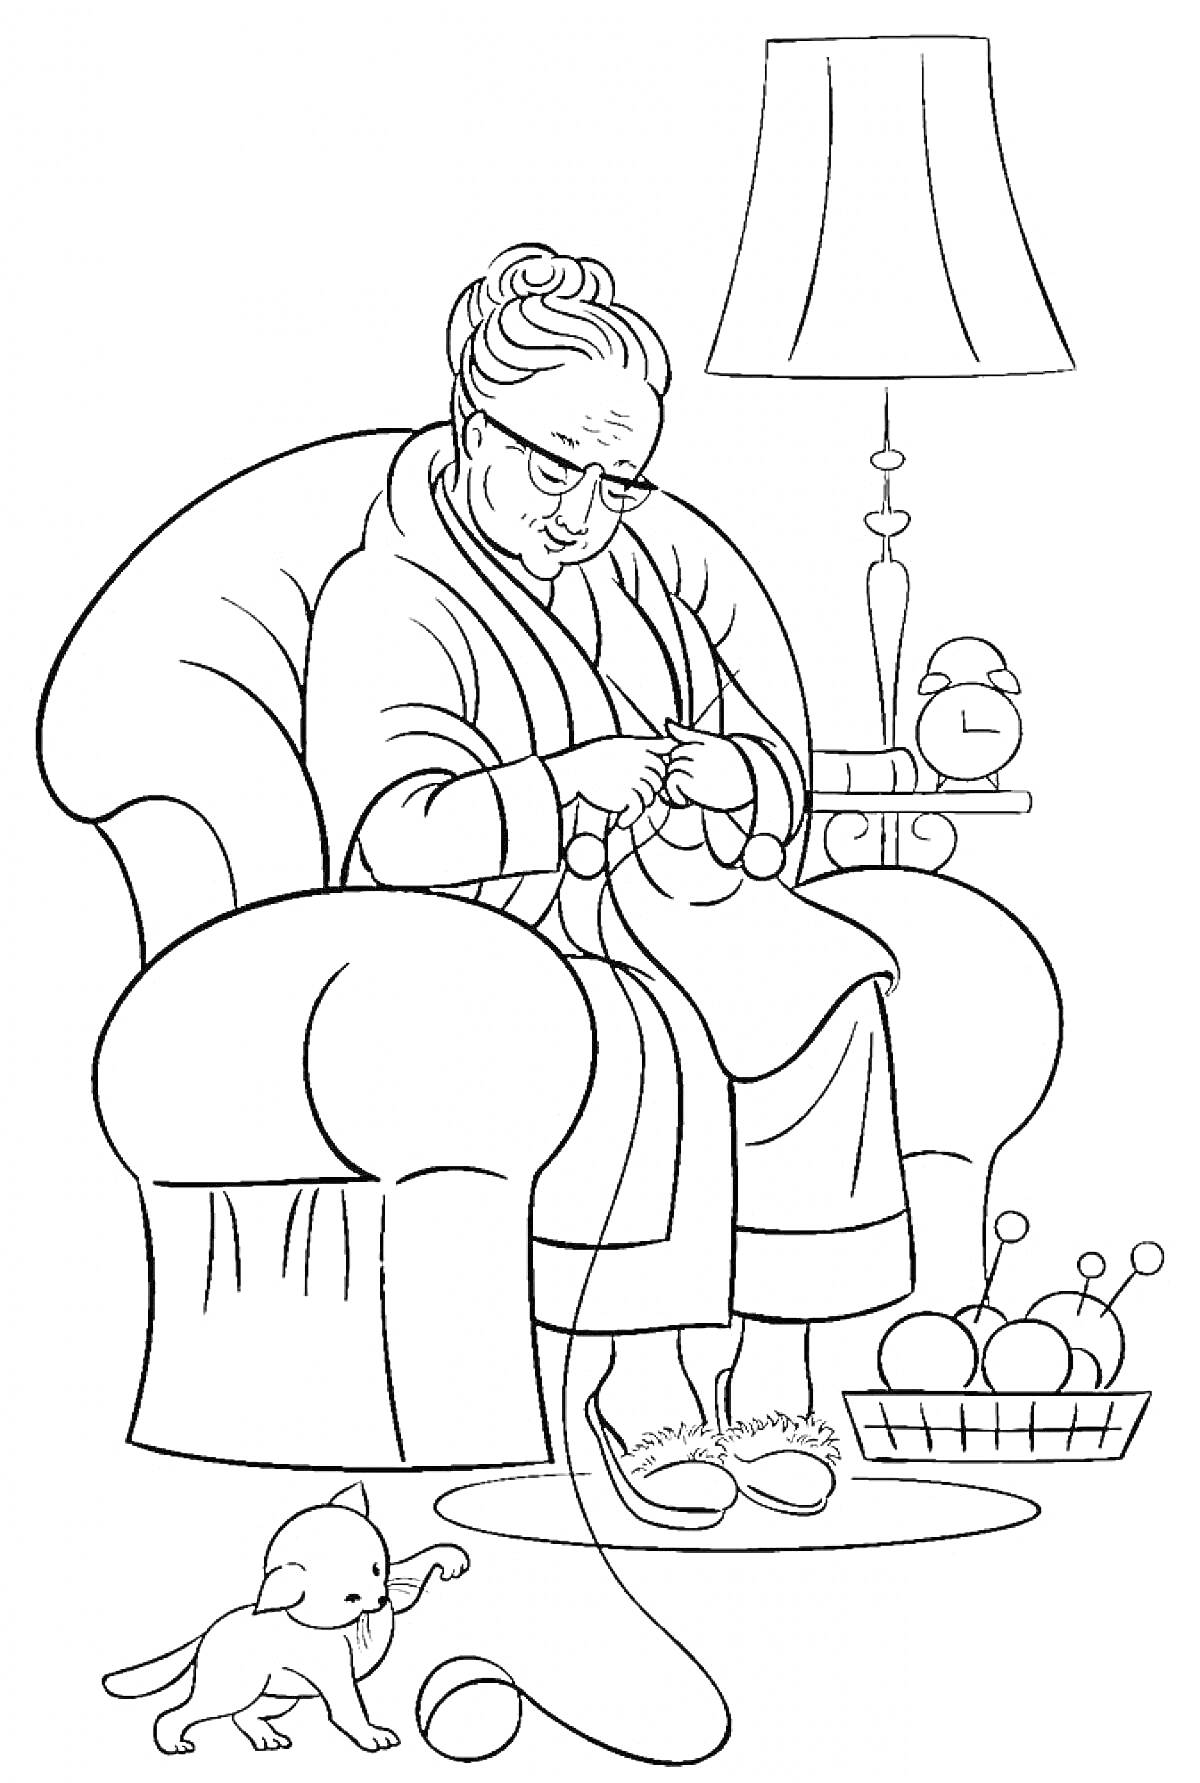 Раскраска Бабушка в кресле с вязанием, щенок, пряжа в корзине, лампа на столике